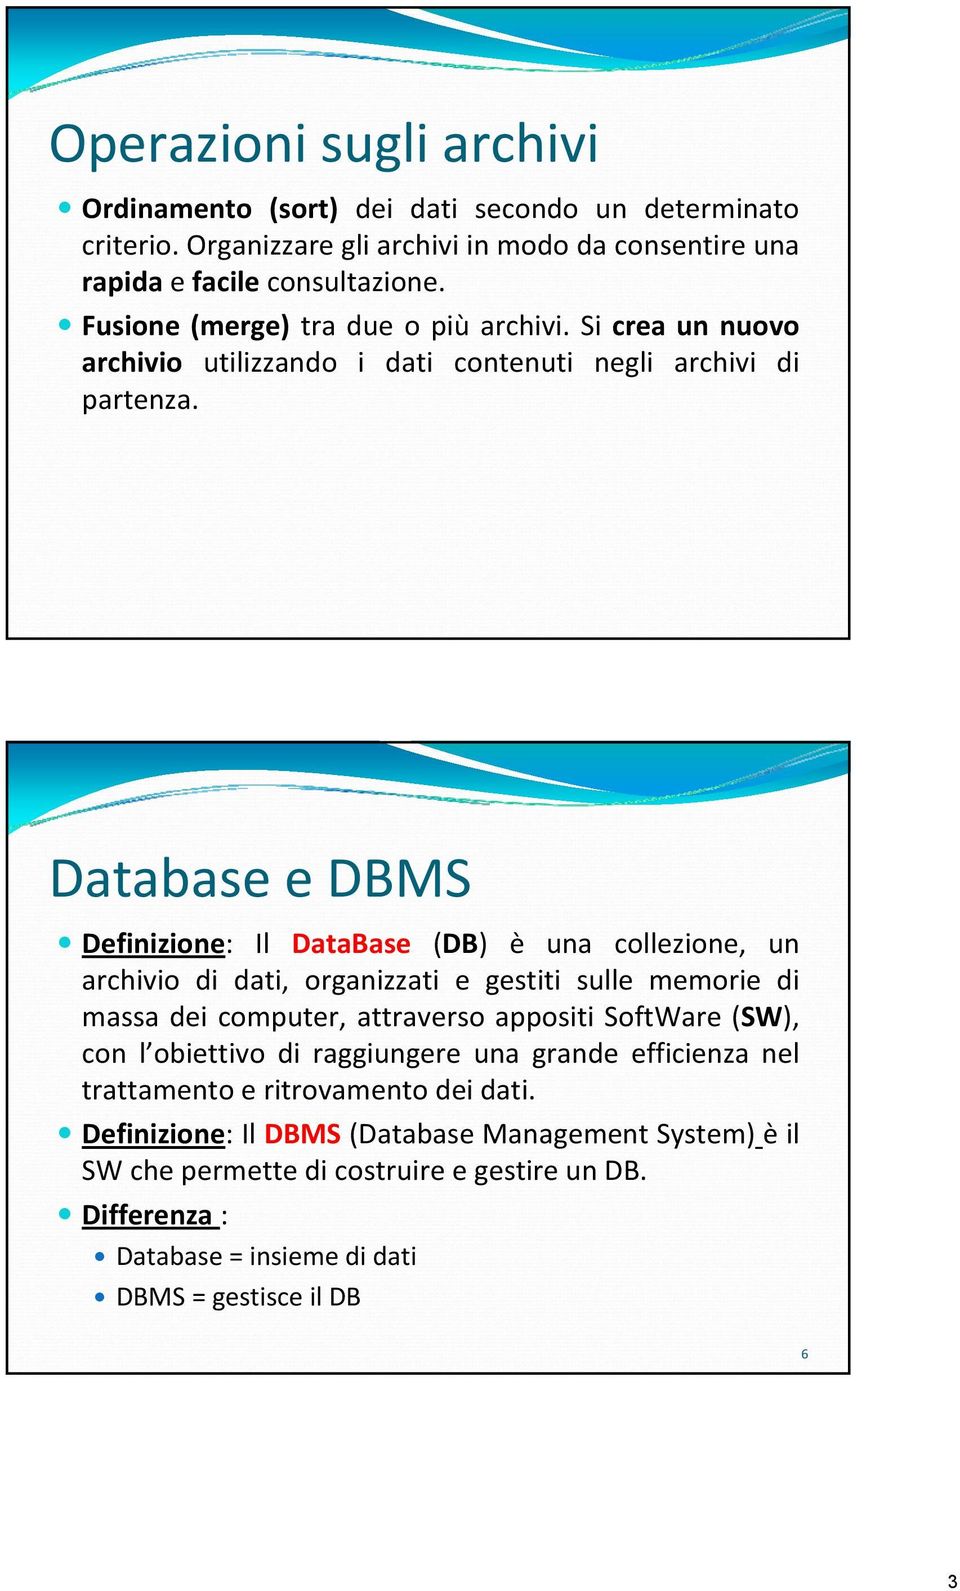 Database e DBMS Definizione: Il DataBase (DB) è una collezione, un archivio di dati, organizzati e gestiti sulle memorie di massa dei computer, attraverso appositi SoftWare (SW),